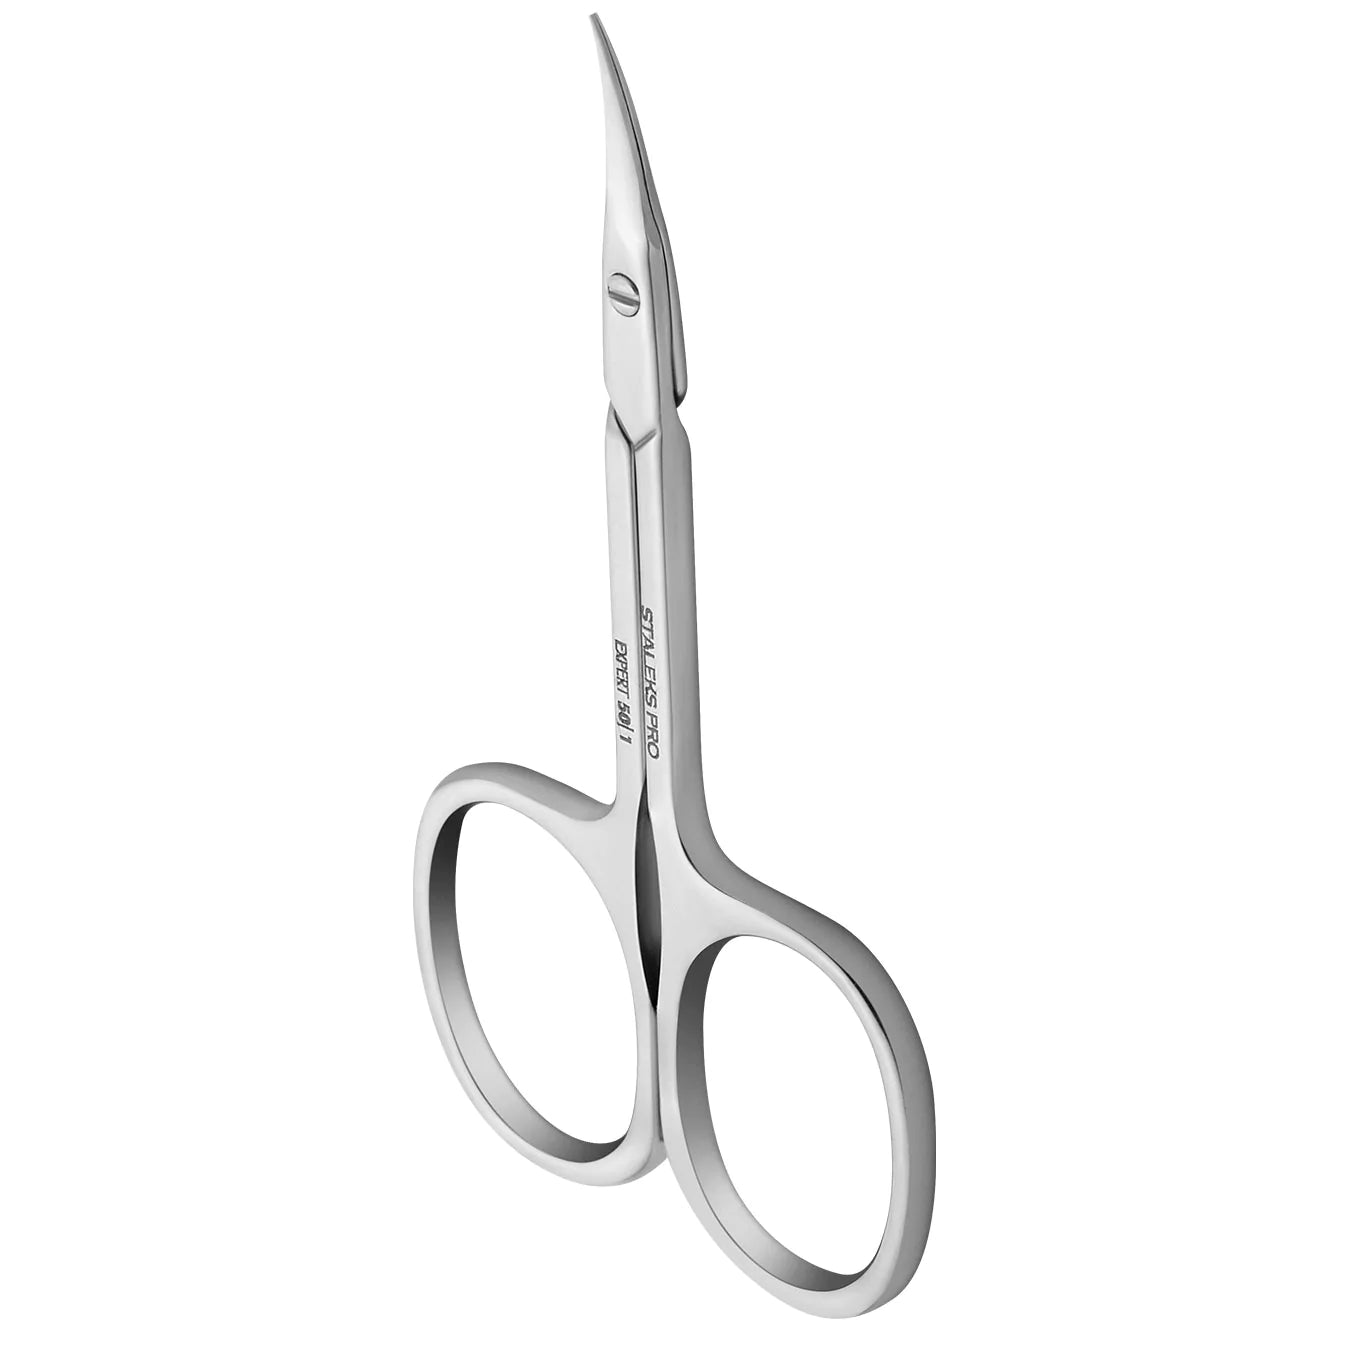 Professional cuticle scissors EXPERT 50 TYPE 1 SE-50/1